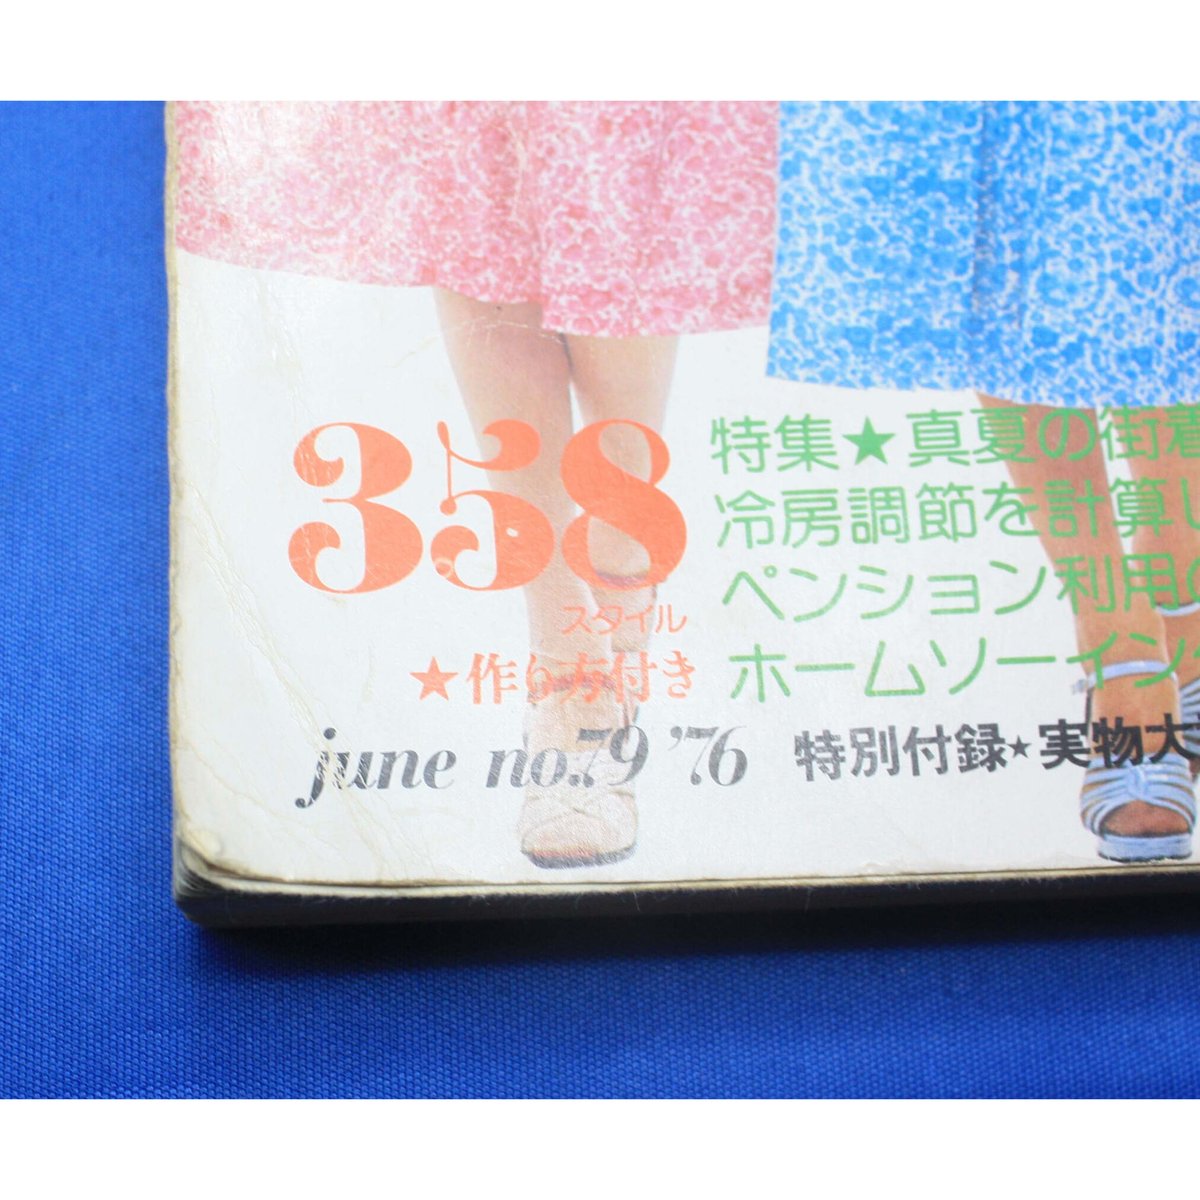 no.79　別冊ドレスメーキング　IWブックス　真夏のスタイルブック　鎌倉書房